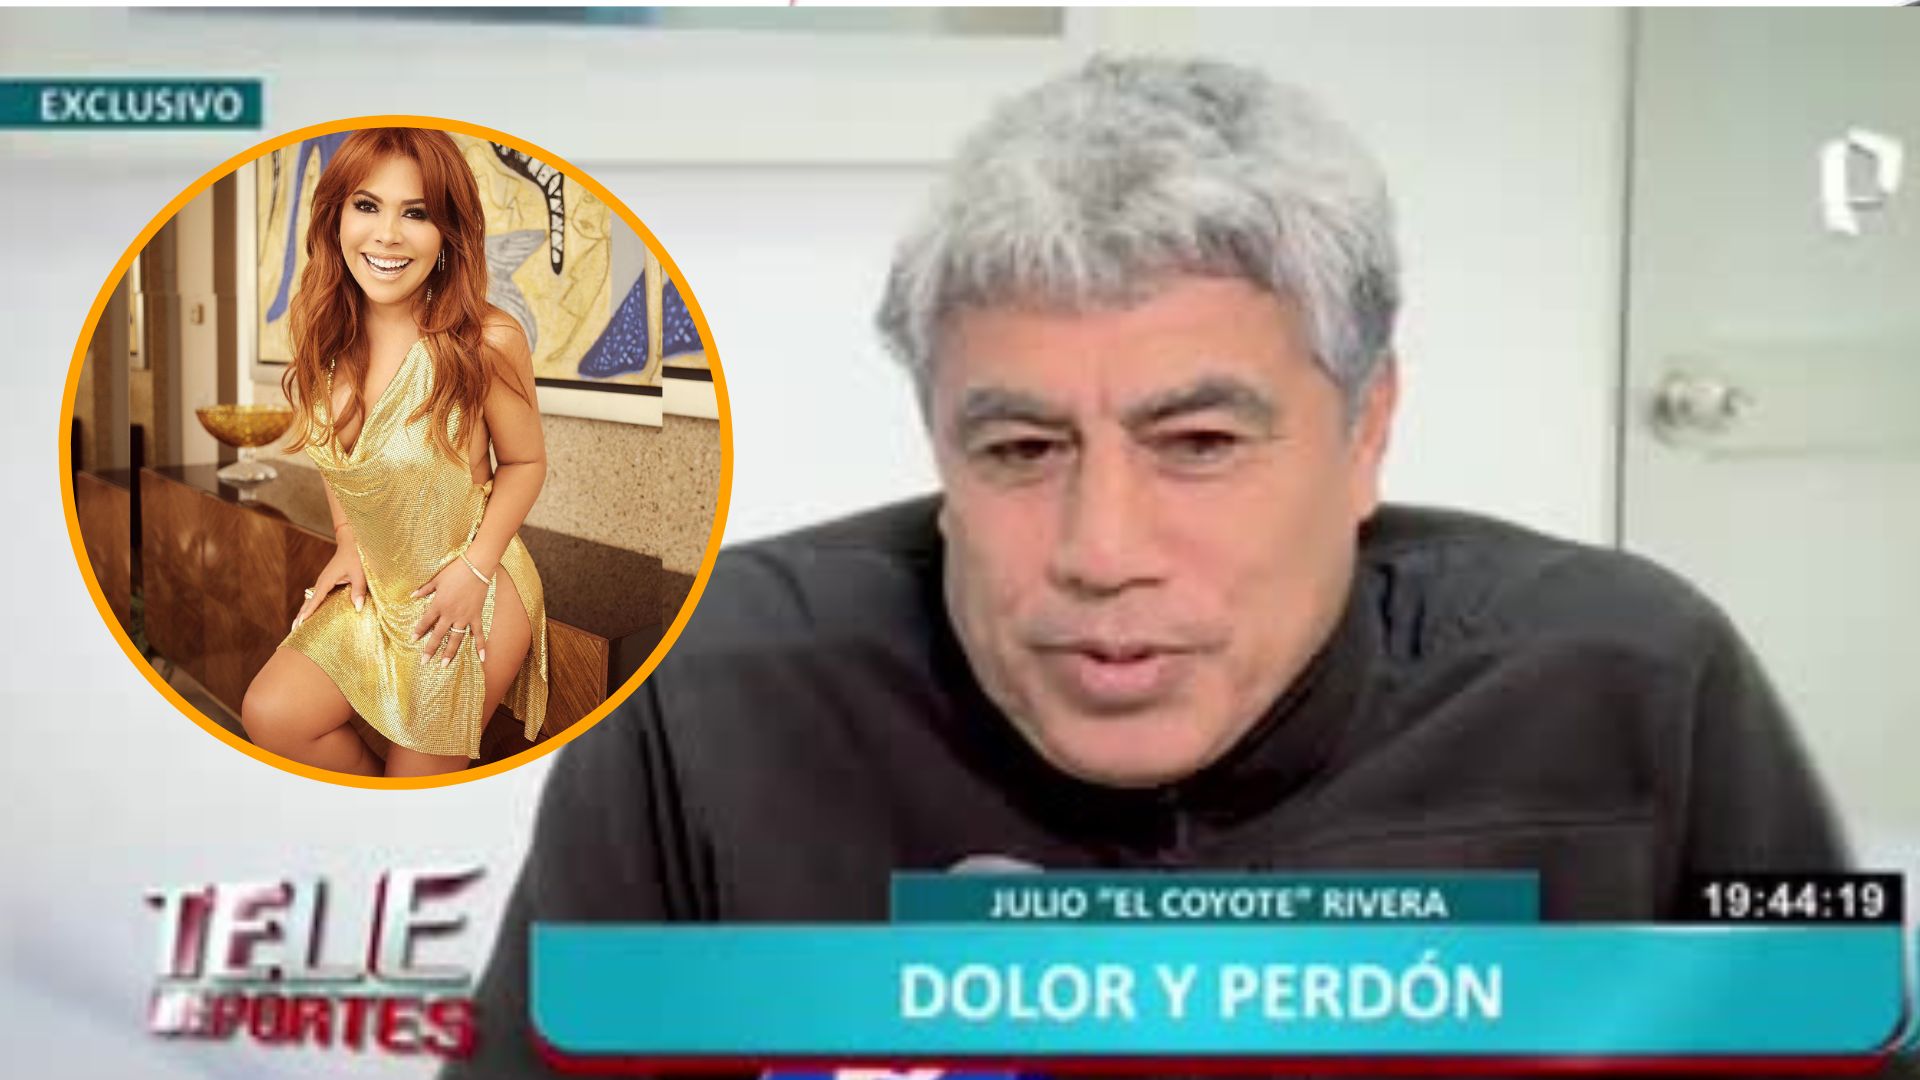 Magaly Medina criticó al ‘Coyote’ Rivera por llorar y pedir perdón en televisión nacional: “mucho show”